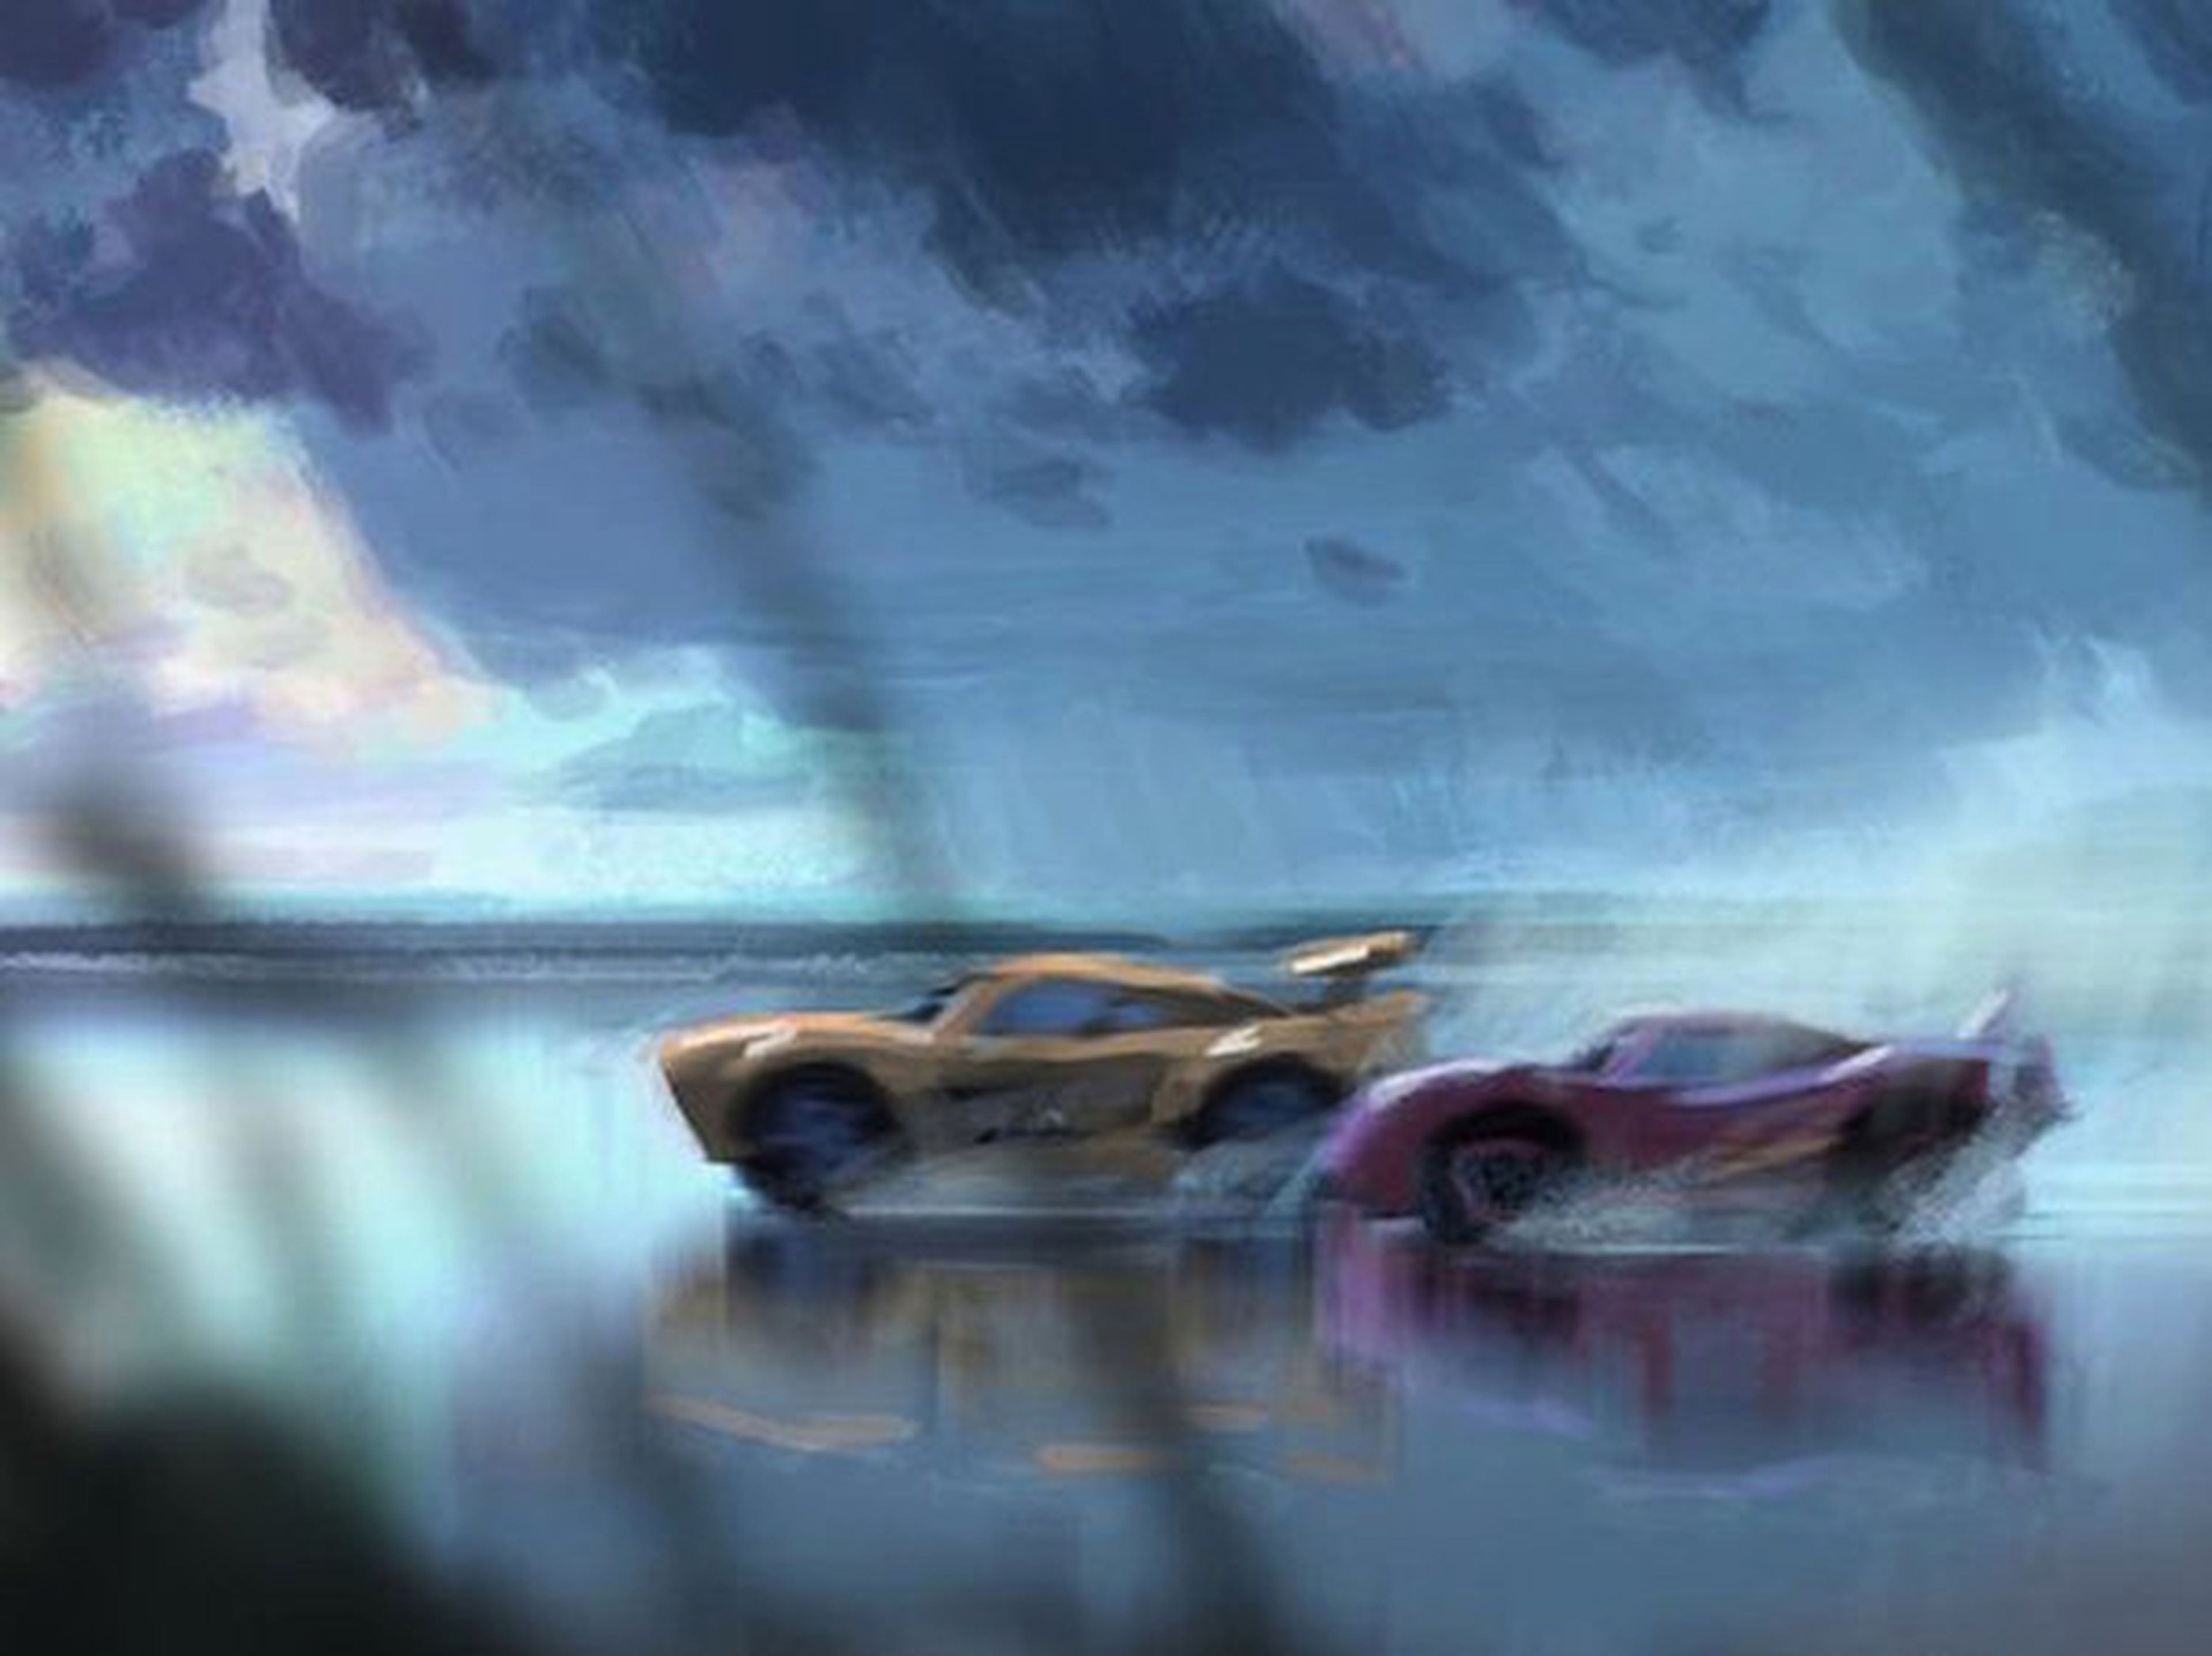 Cars 3 – John Lasseter quiere volver a los orígenes